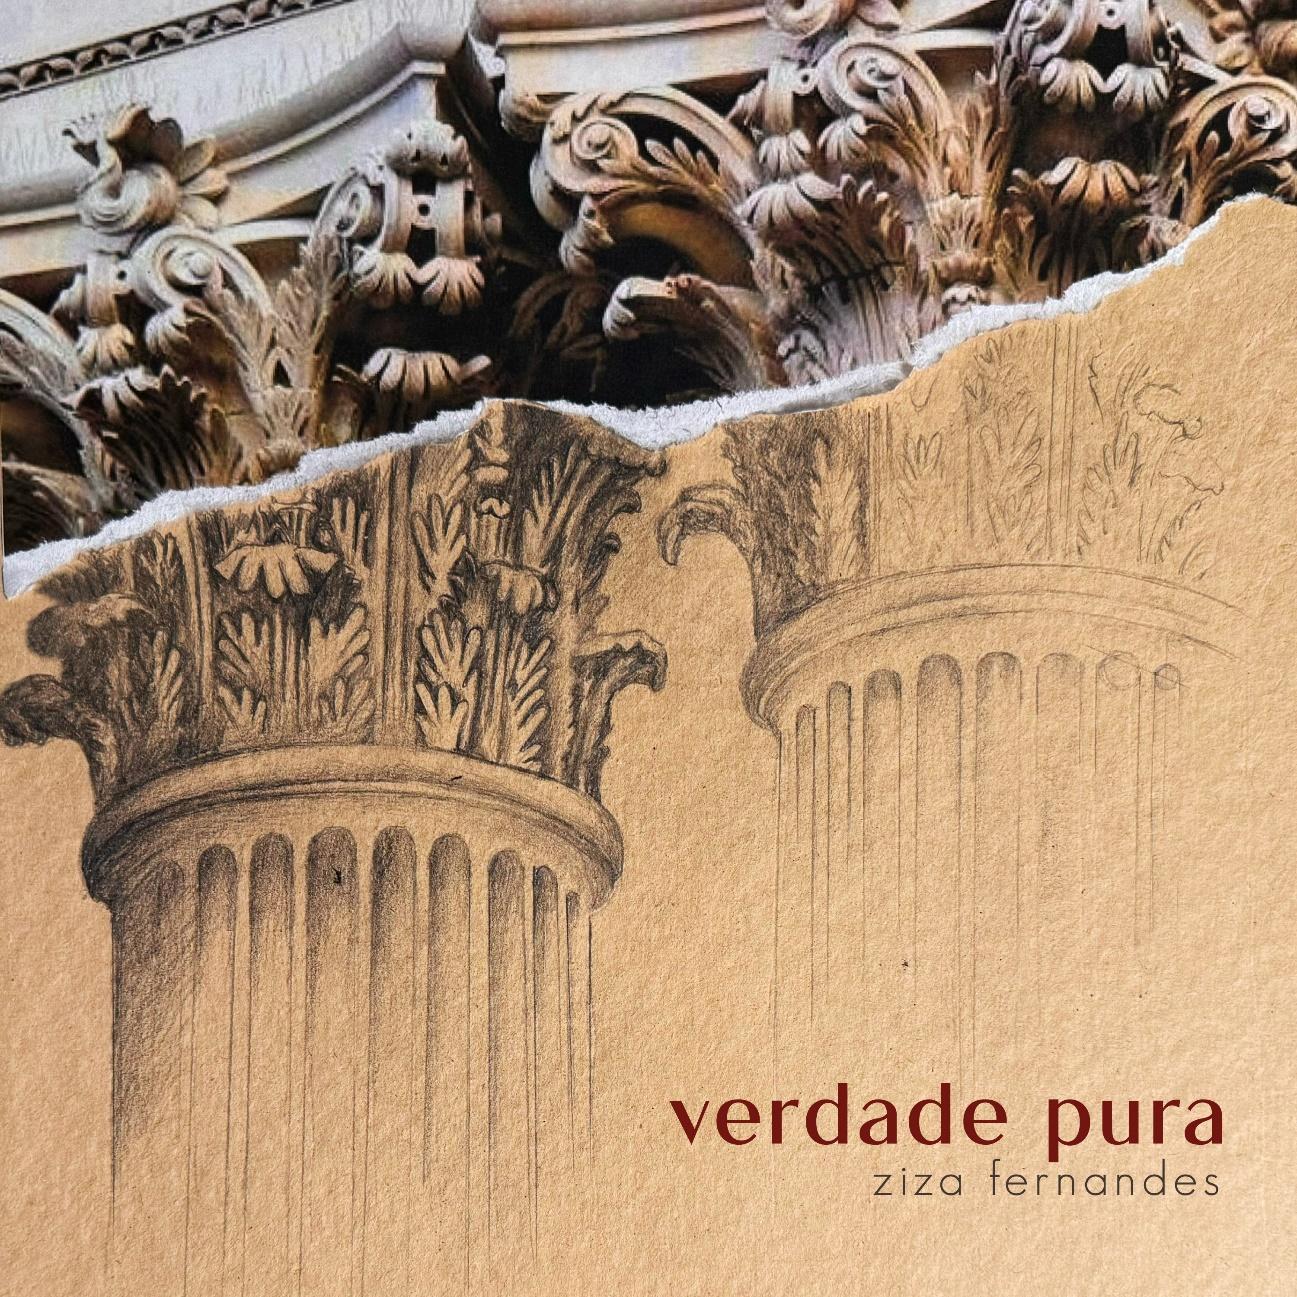 Ziza Fernandes lança o single “Verdade Pura”